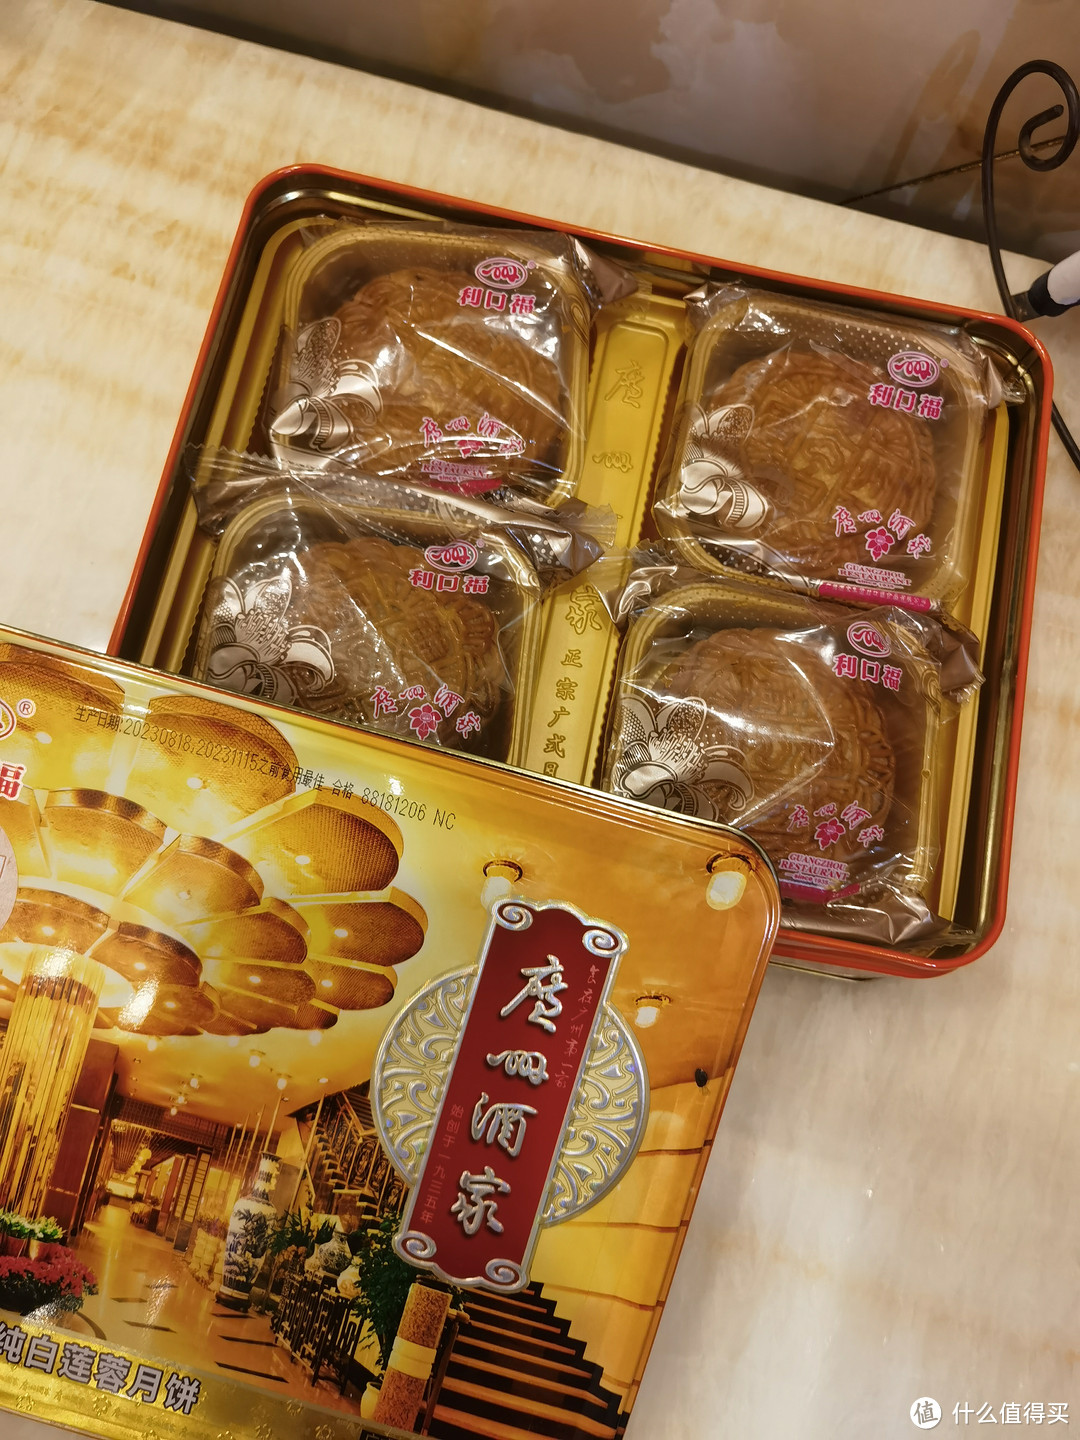 回归月饼的本质、吃点好的——广州酒家双黄莲蓉月饼